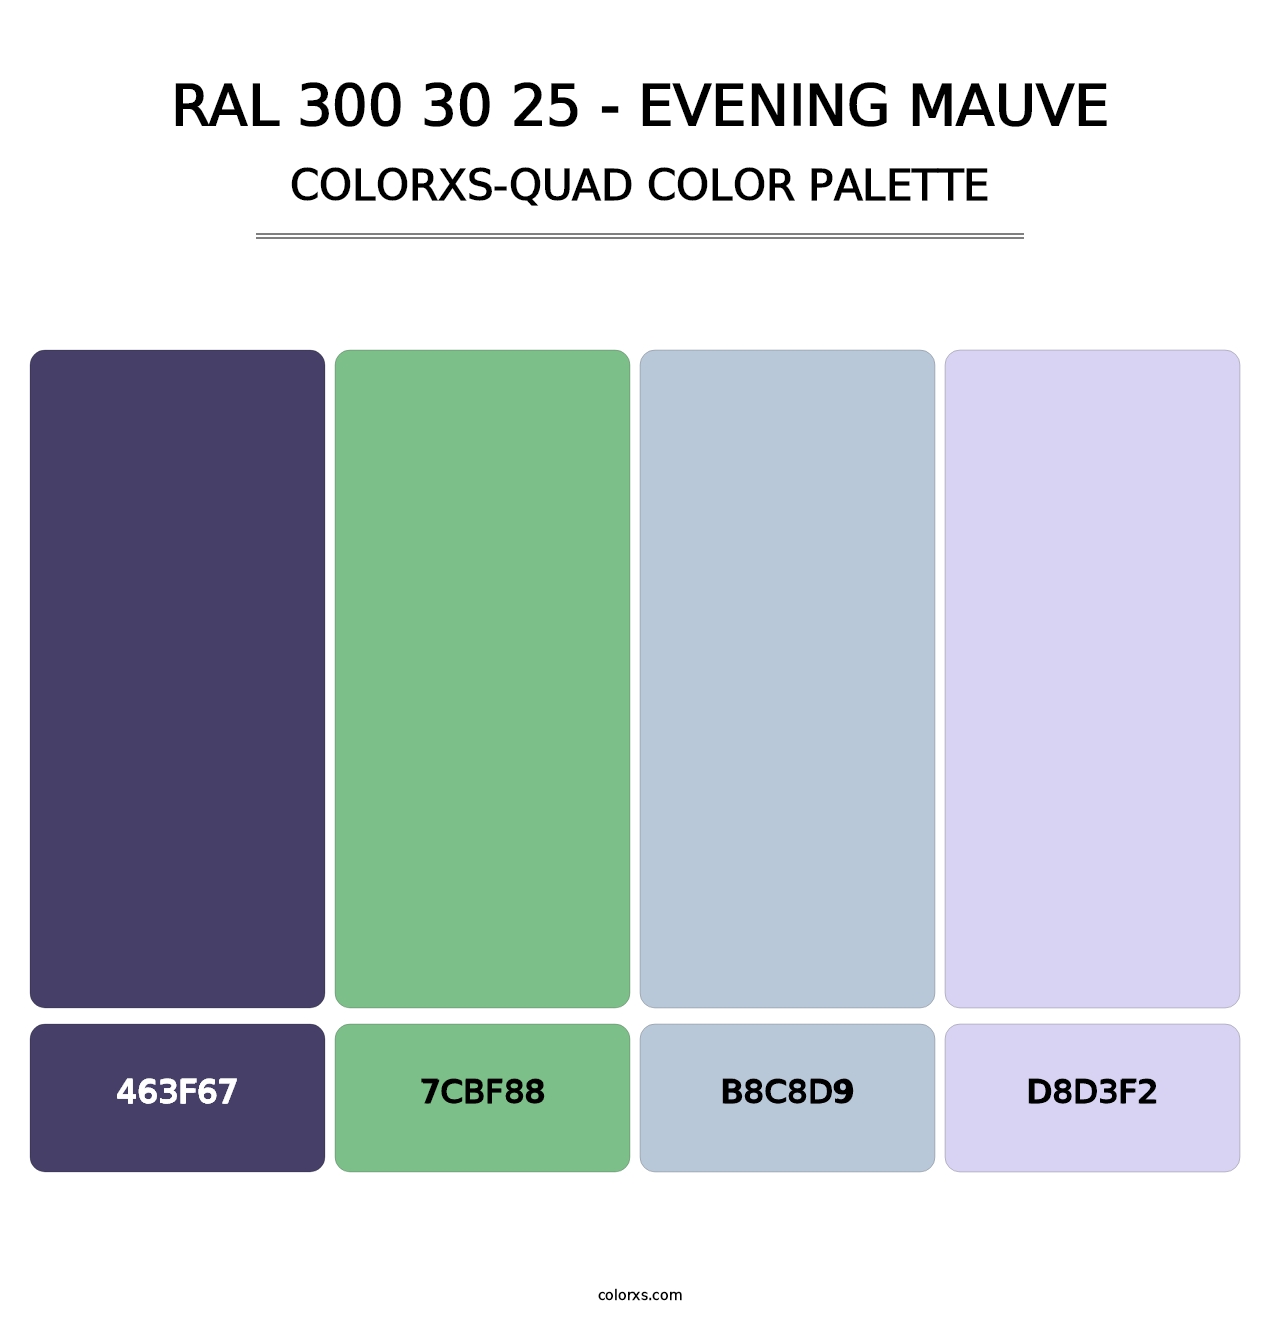 RAL 300 30 25 - Evening Mauve - Colorxs Quad Palette